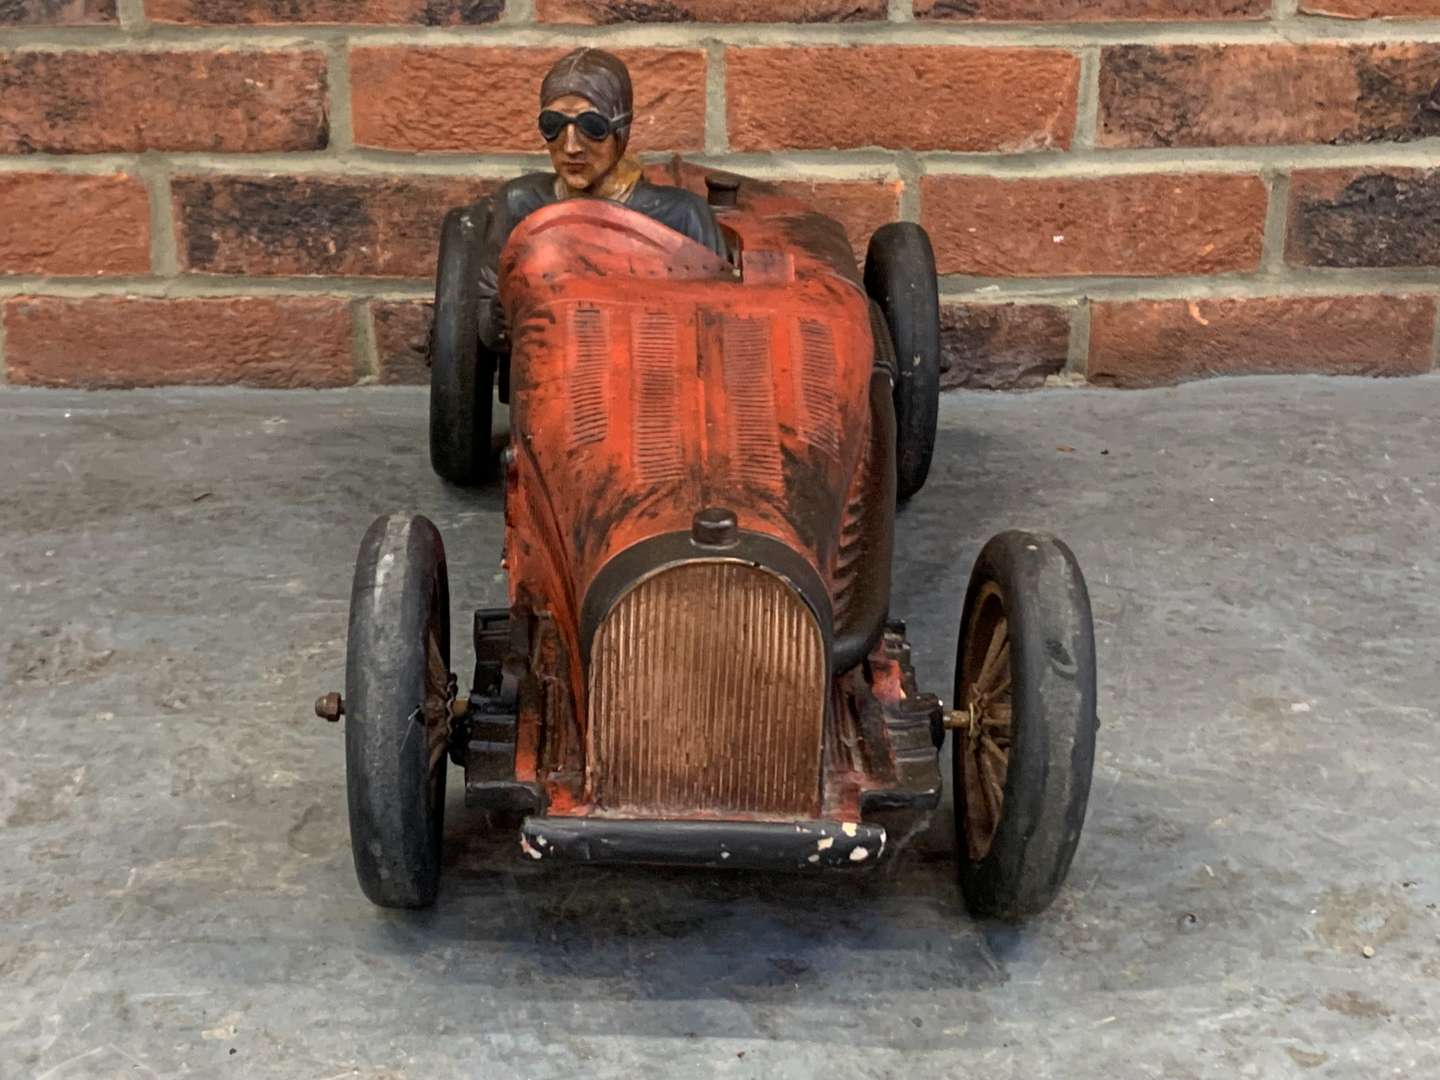 <p>Vintage Model of a Race Car</p>